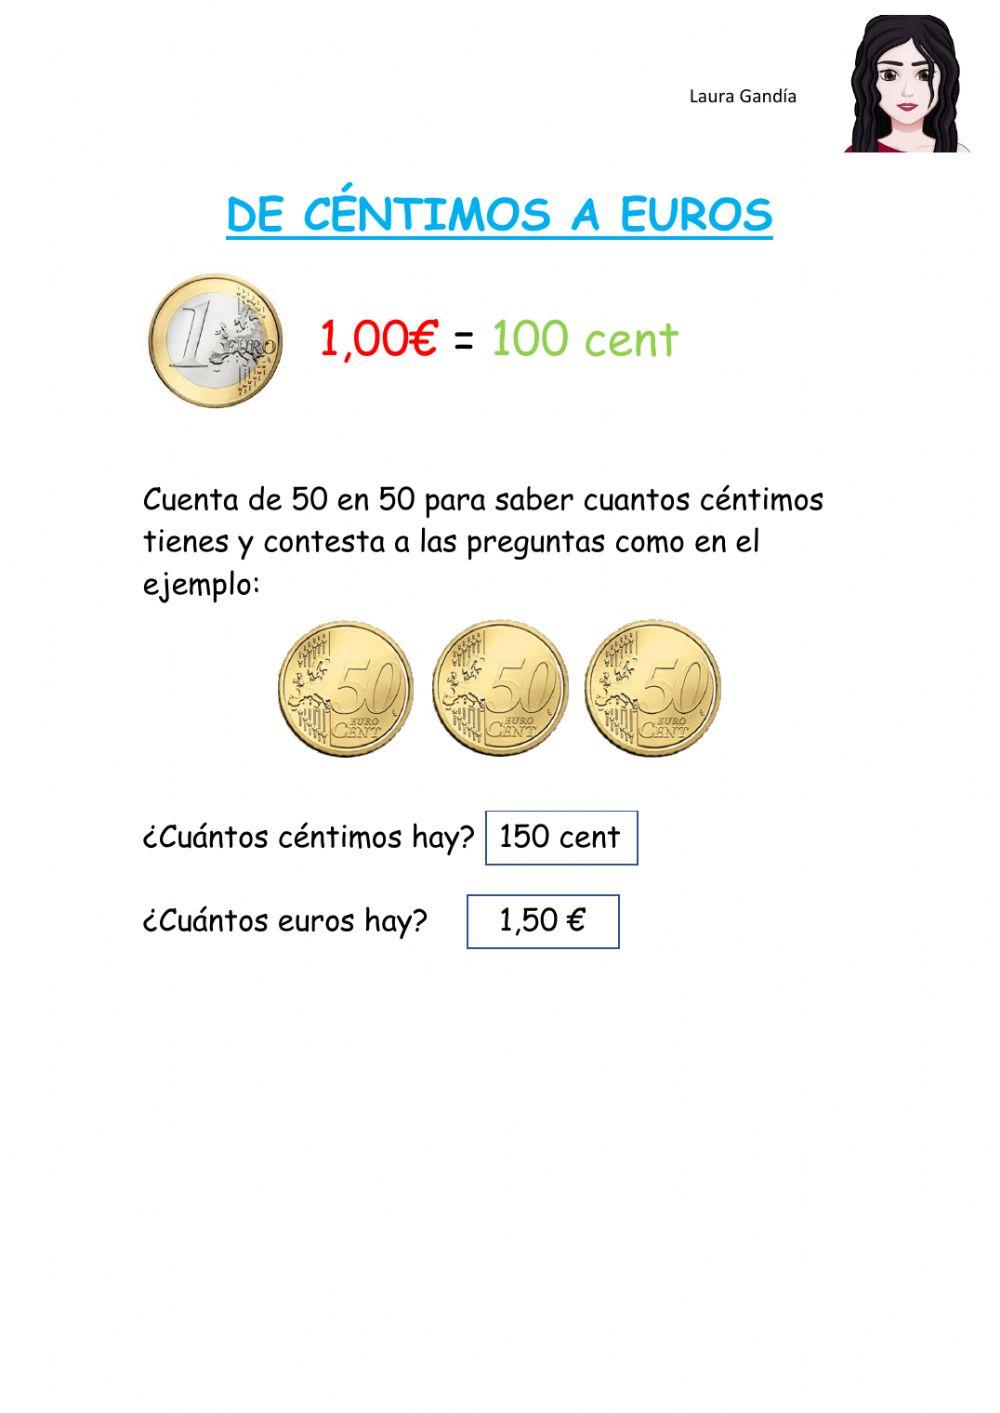 Monedas de 50 cent